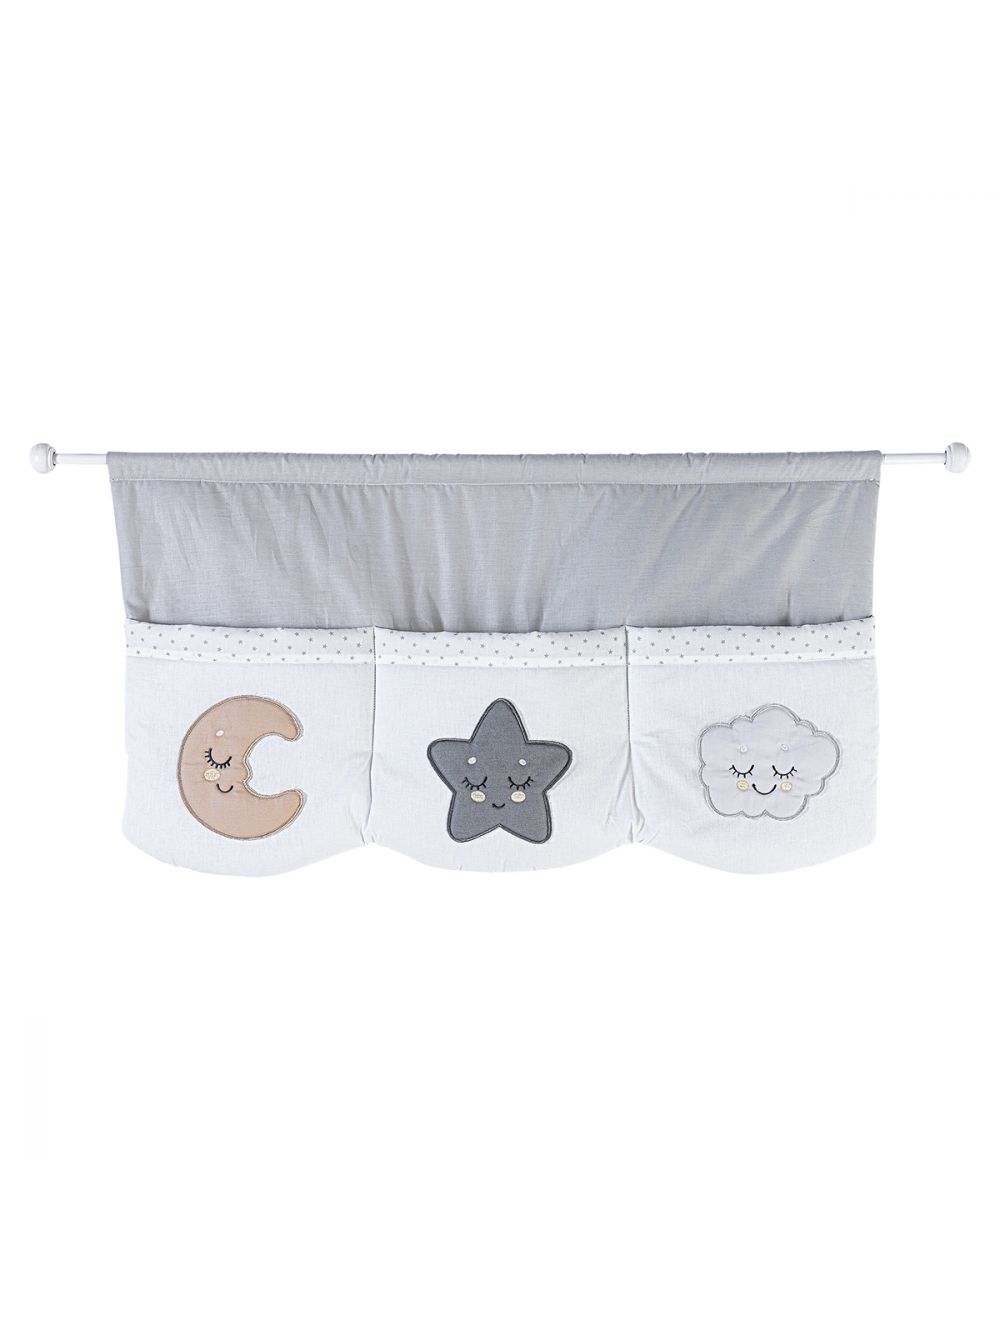 Niedliche Wandtasche / Wandorganizer Smile für das Babyzimmer